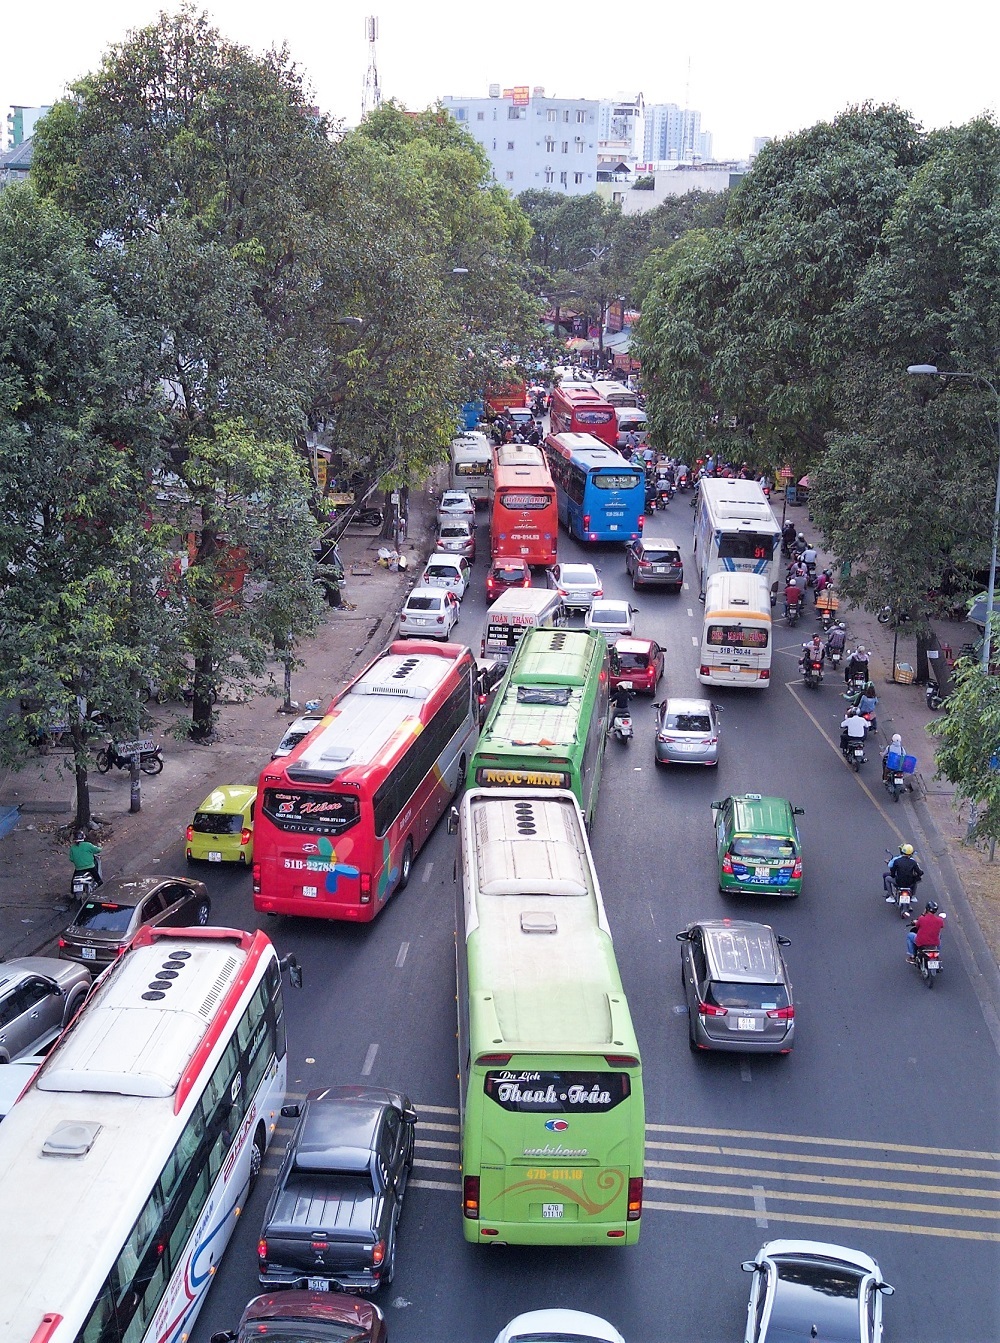 Bến xe lớn nhất Sài Gòn 'nghẹt thở' vào cao điểm Tết